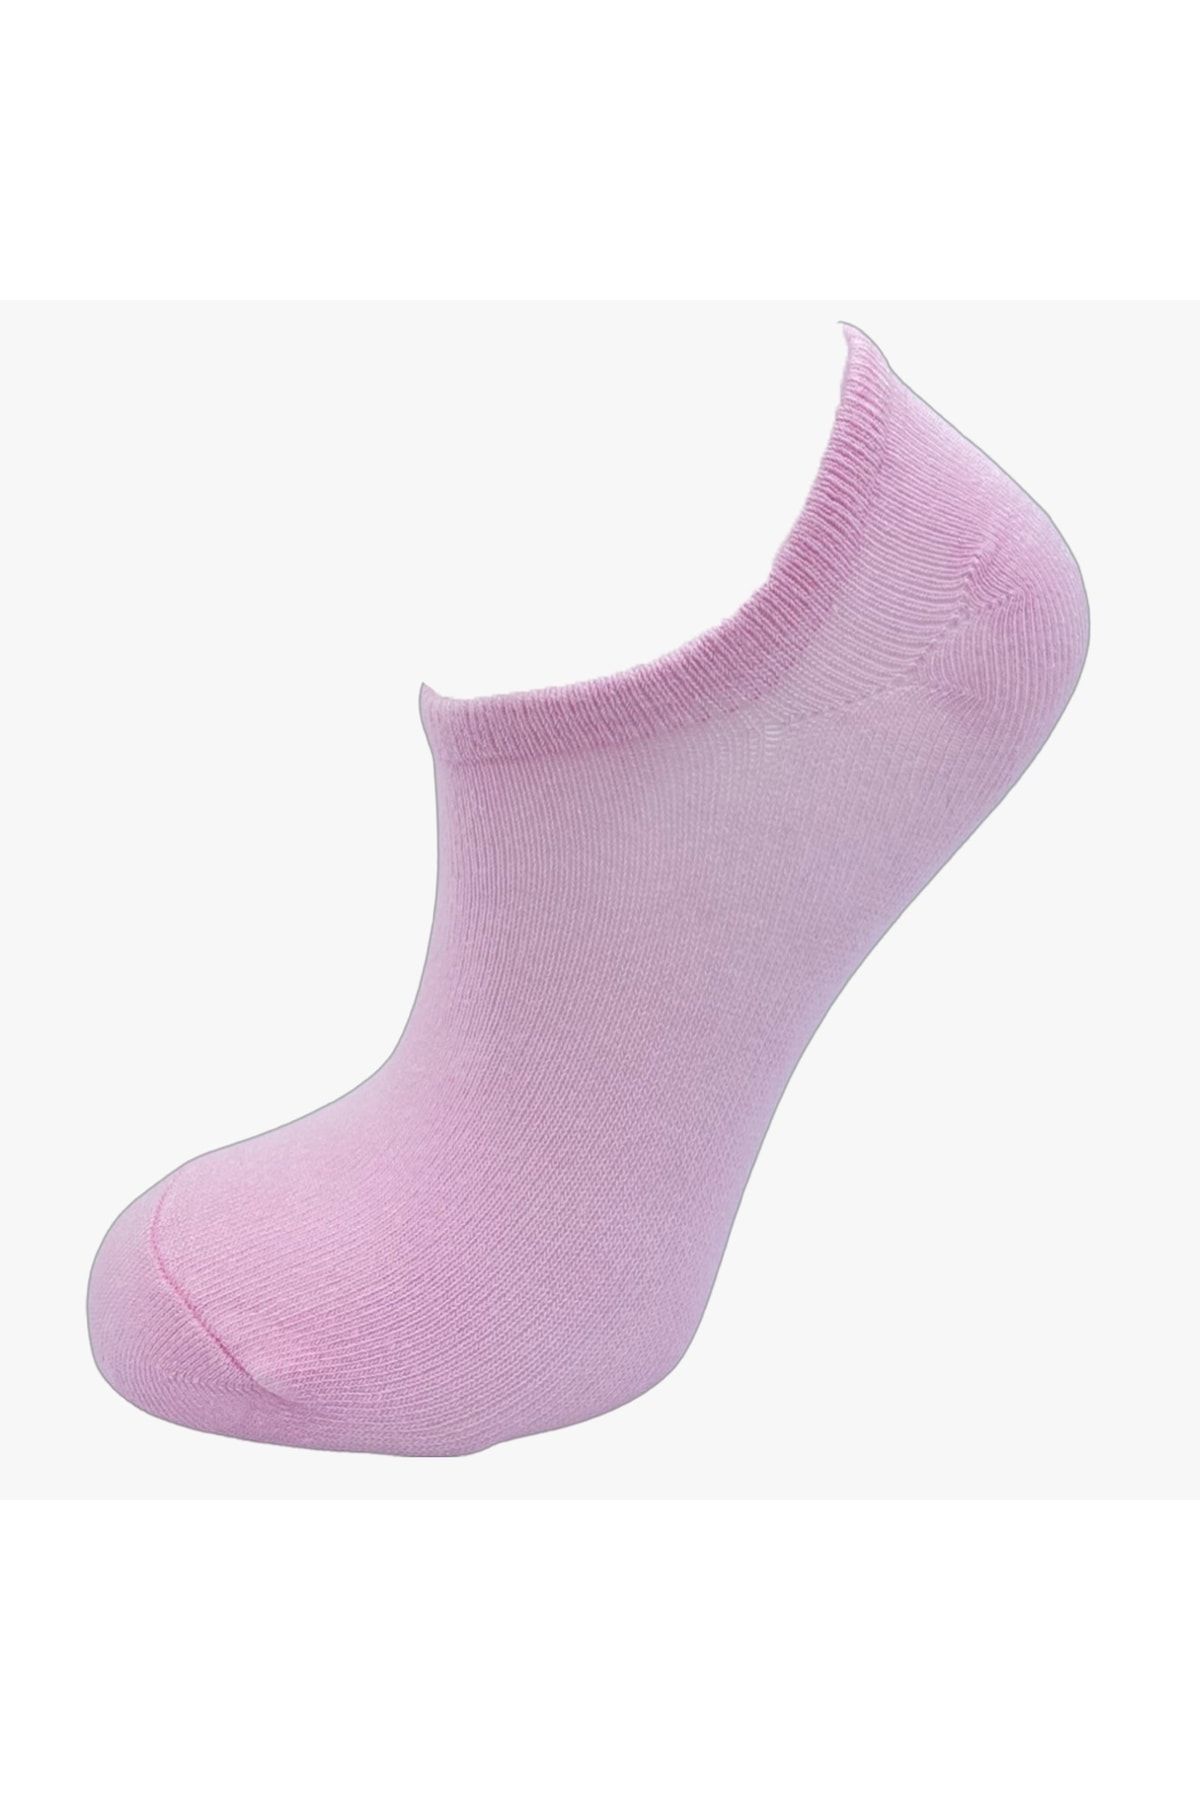 pazariz Unisex Patik Çorap 4 Lü